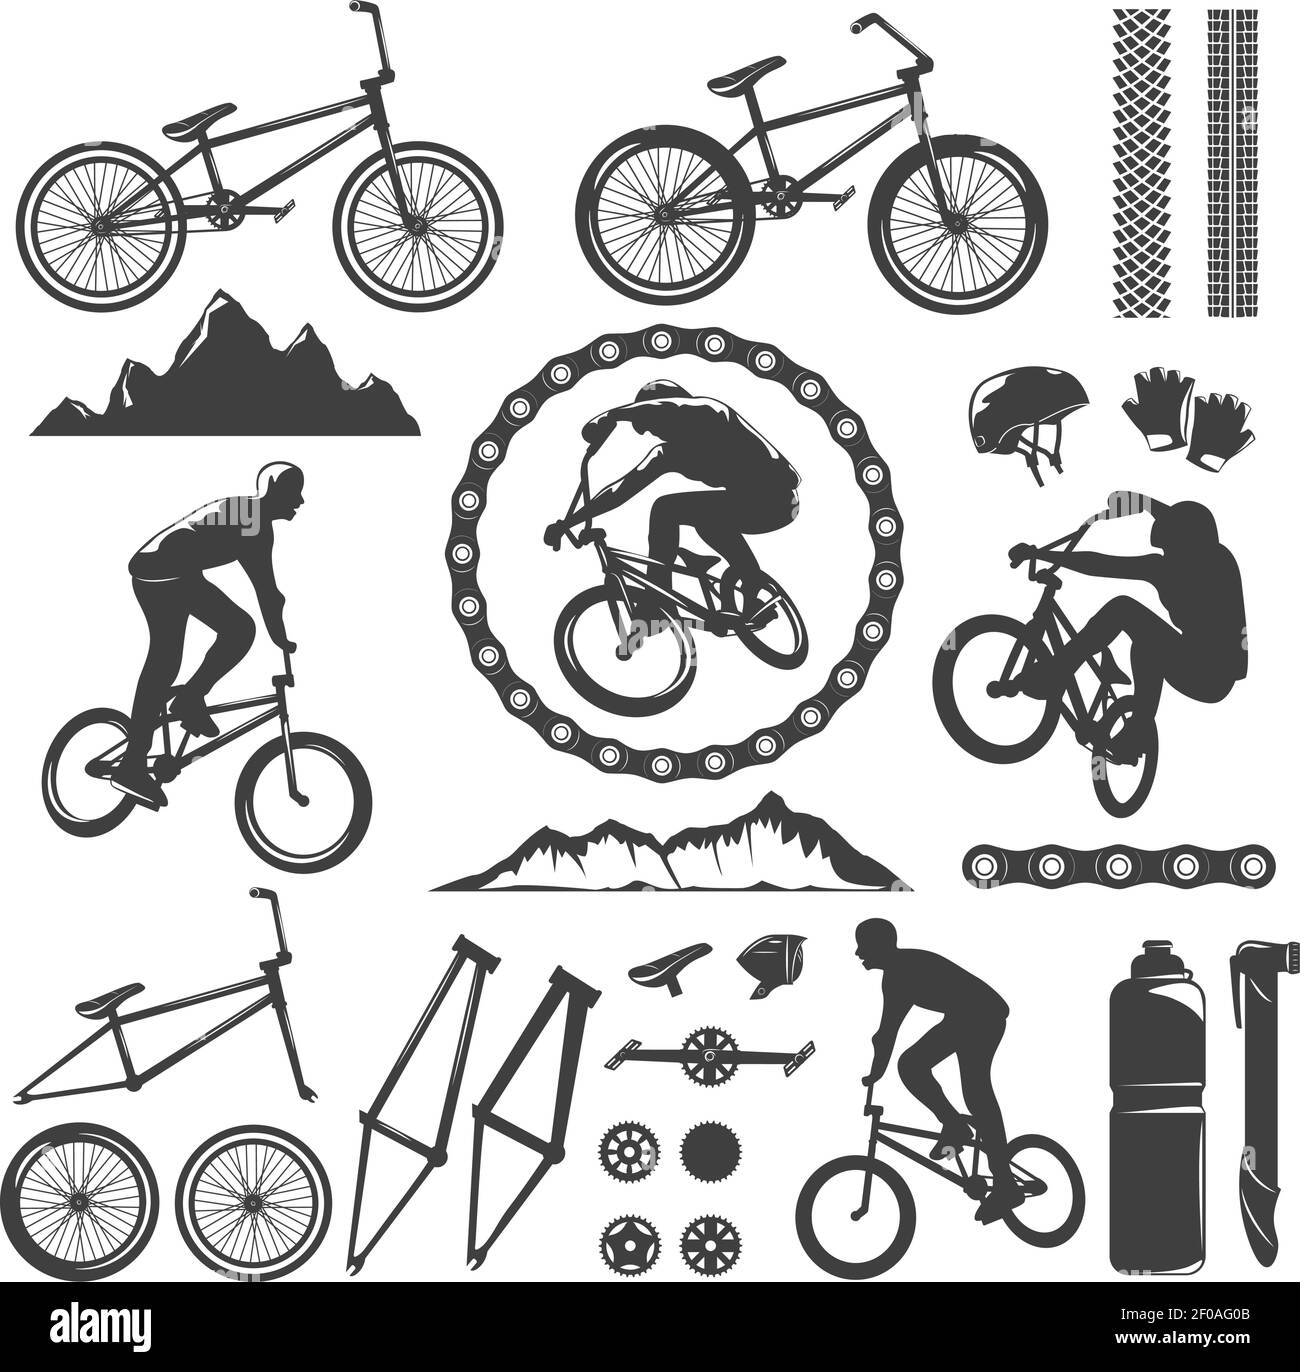 Ensemble de symboles décoratifs BMX avec cadre de chaîne de vélo illustration vectorielle isolée du casque à pédales sur piste rocheuse Illustration de Vecteur